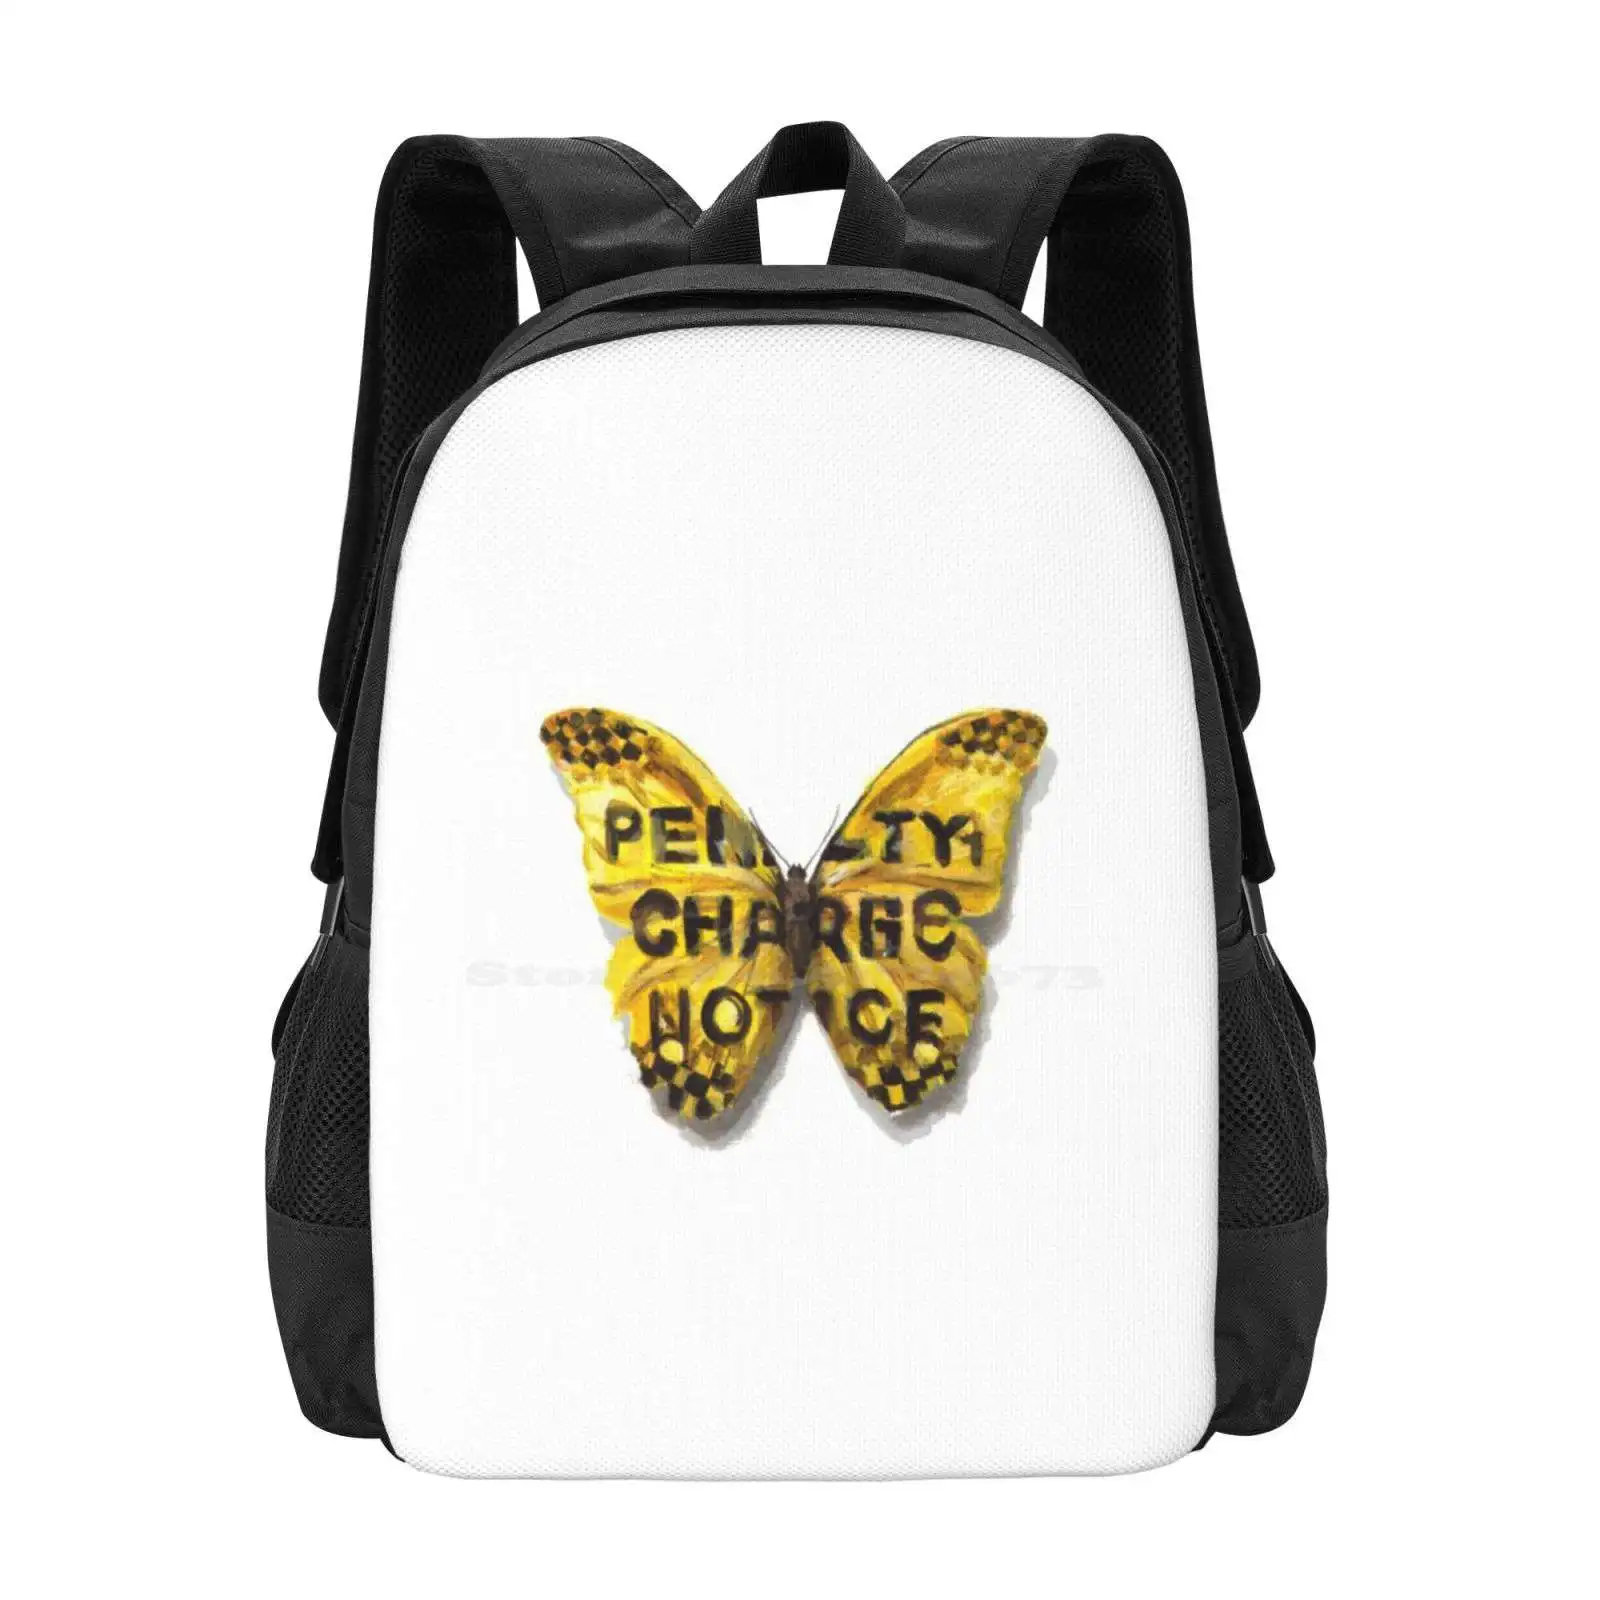 Городские джунгли: дизайнерская сумка с рисунком бабочки, Студенческий рюкзак, Штраф за парковку Butterlfy, Камуфляжная адаптация, Желтый Забавный